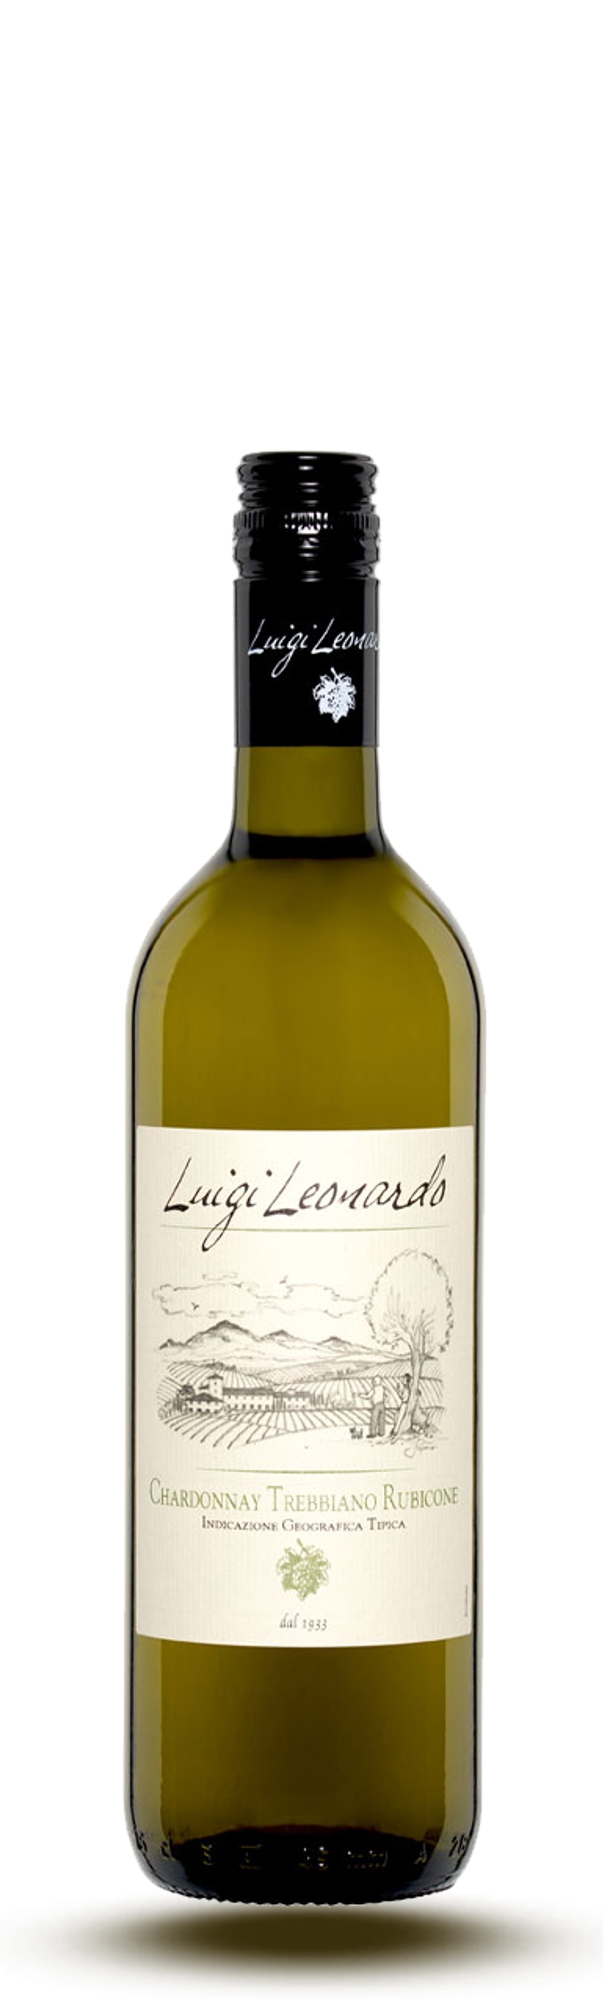 Luigi Leonardo, Chardonnay-Trebbiano Rubicone 